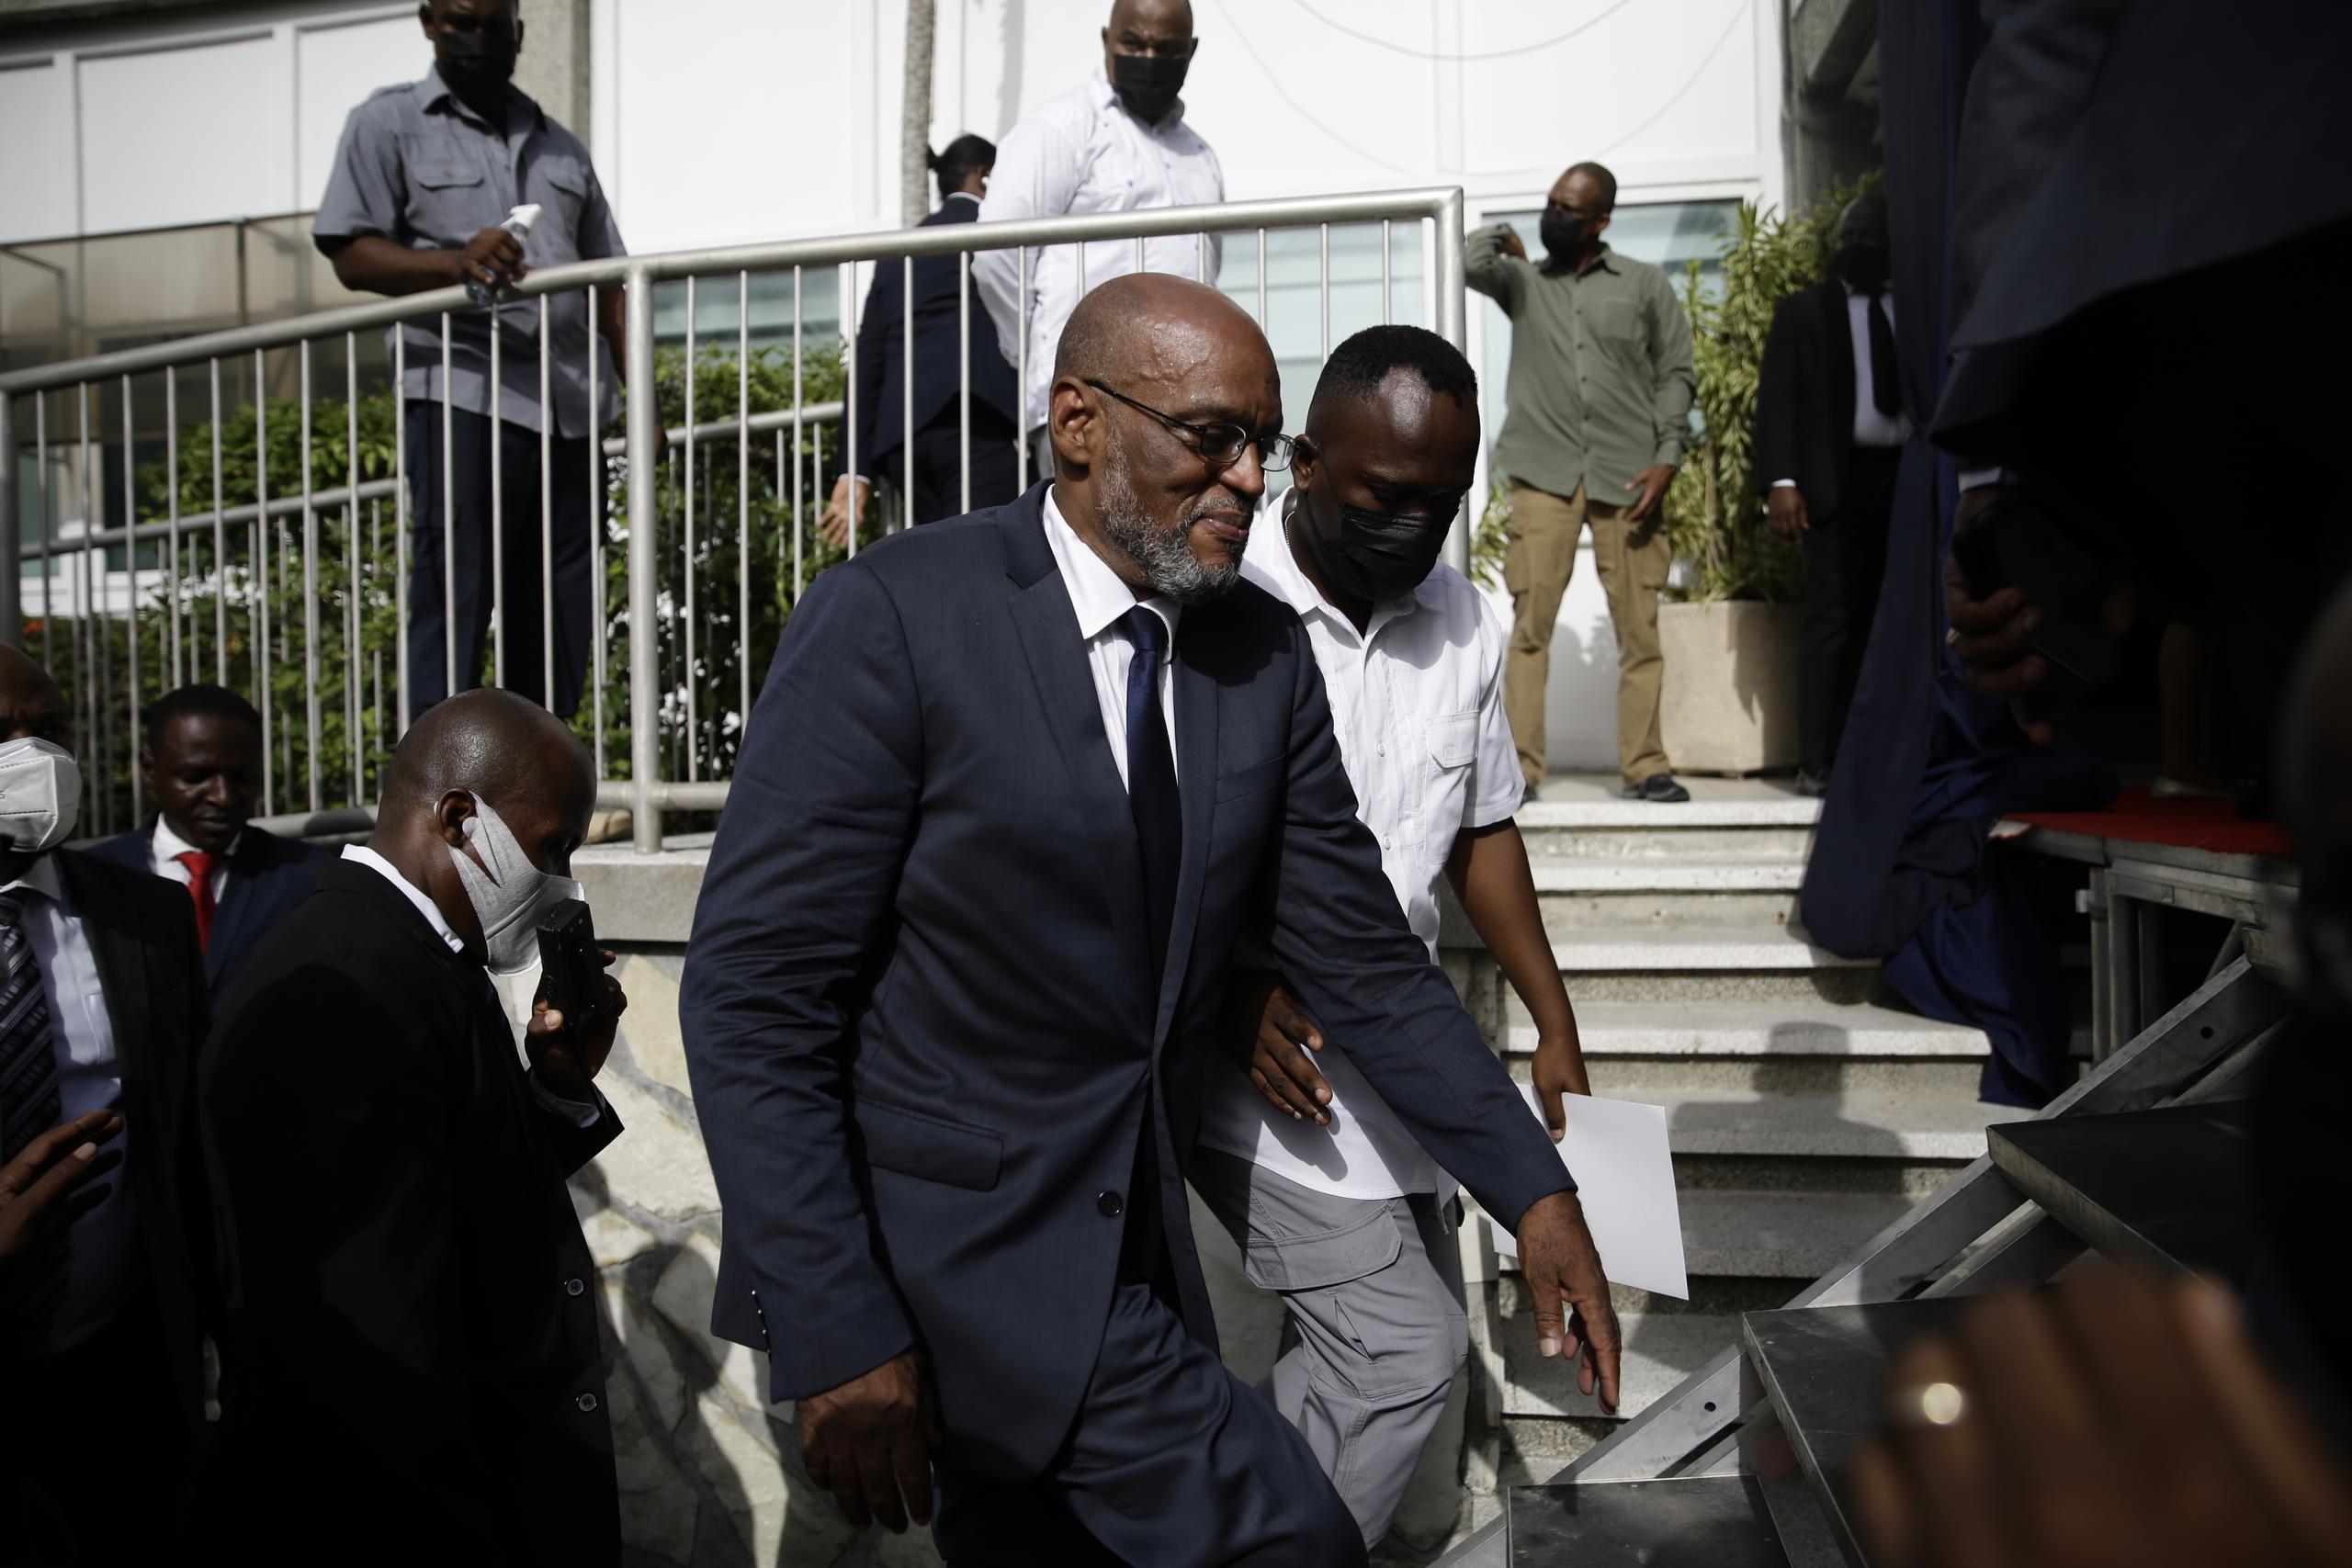 El nuevo primer ministro de Haití, Ariel Henry, sube escaleras acompañado de escoltas después de ser designado al cargo, en Puerto Príncipe.